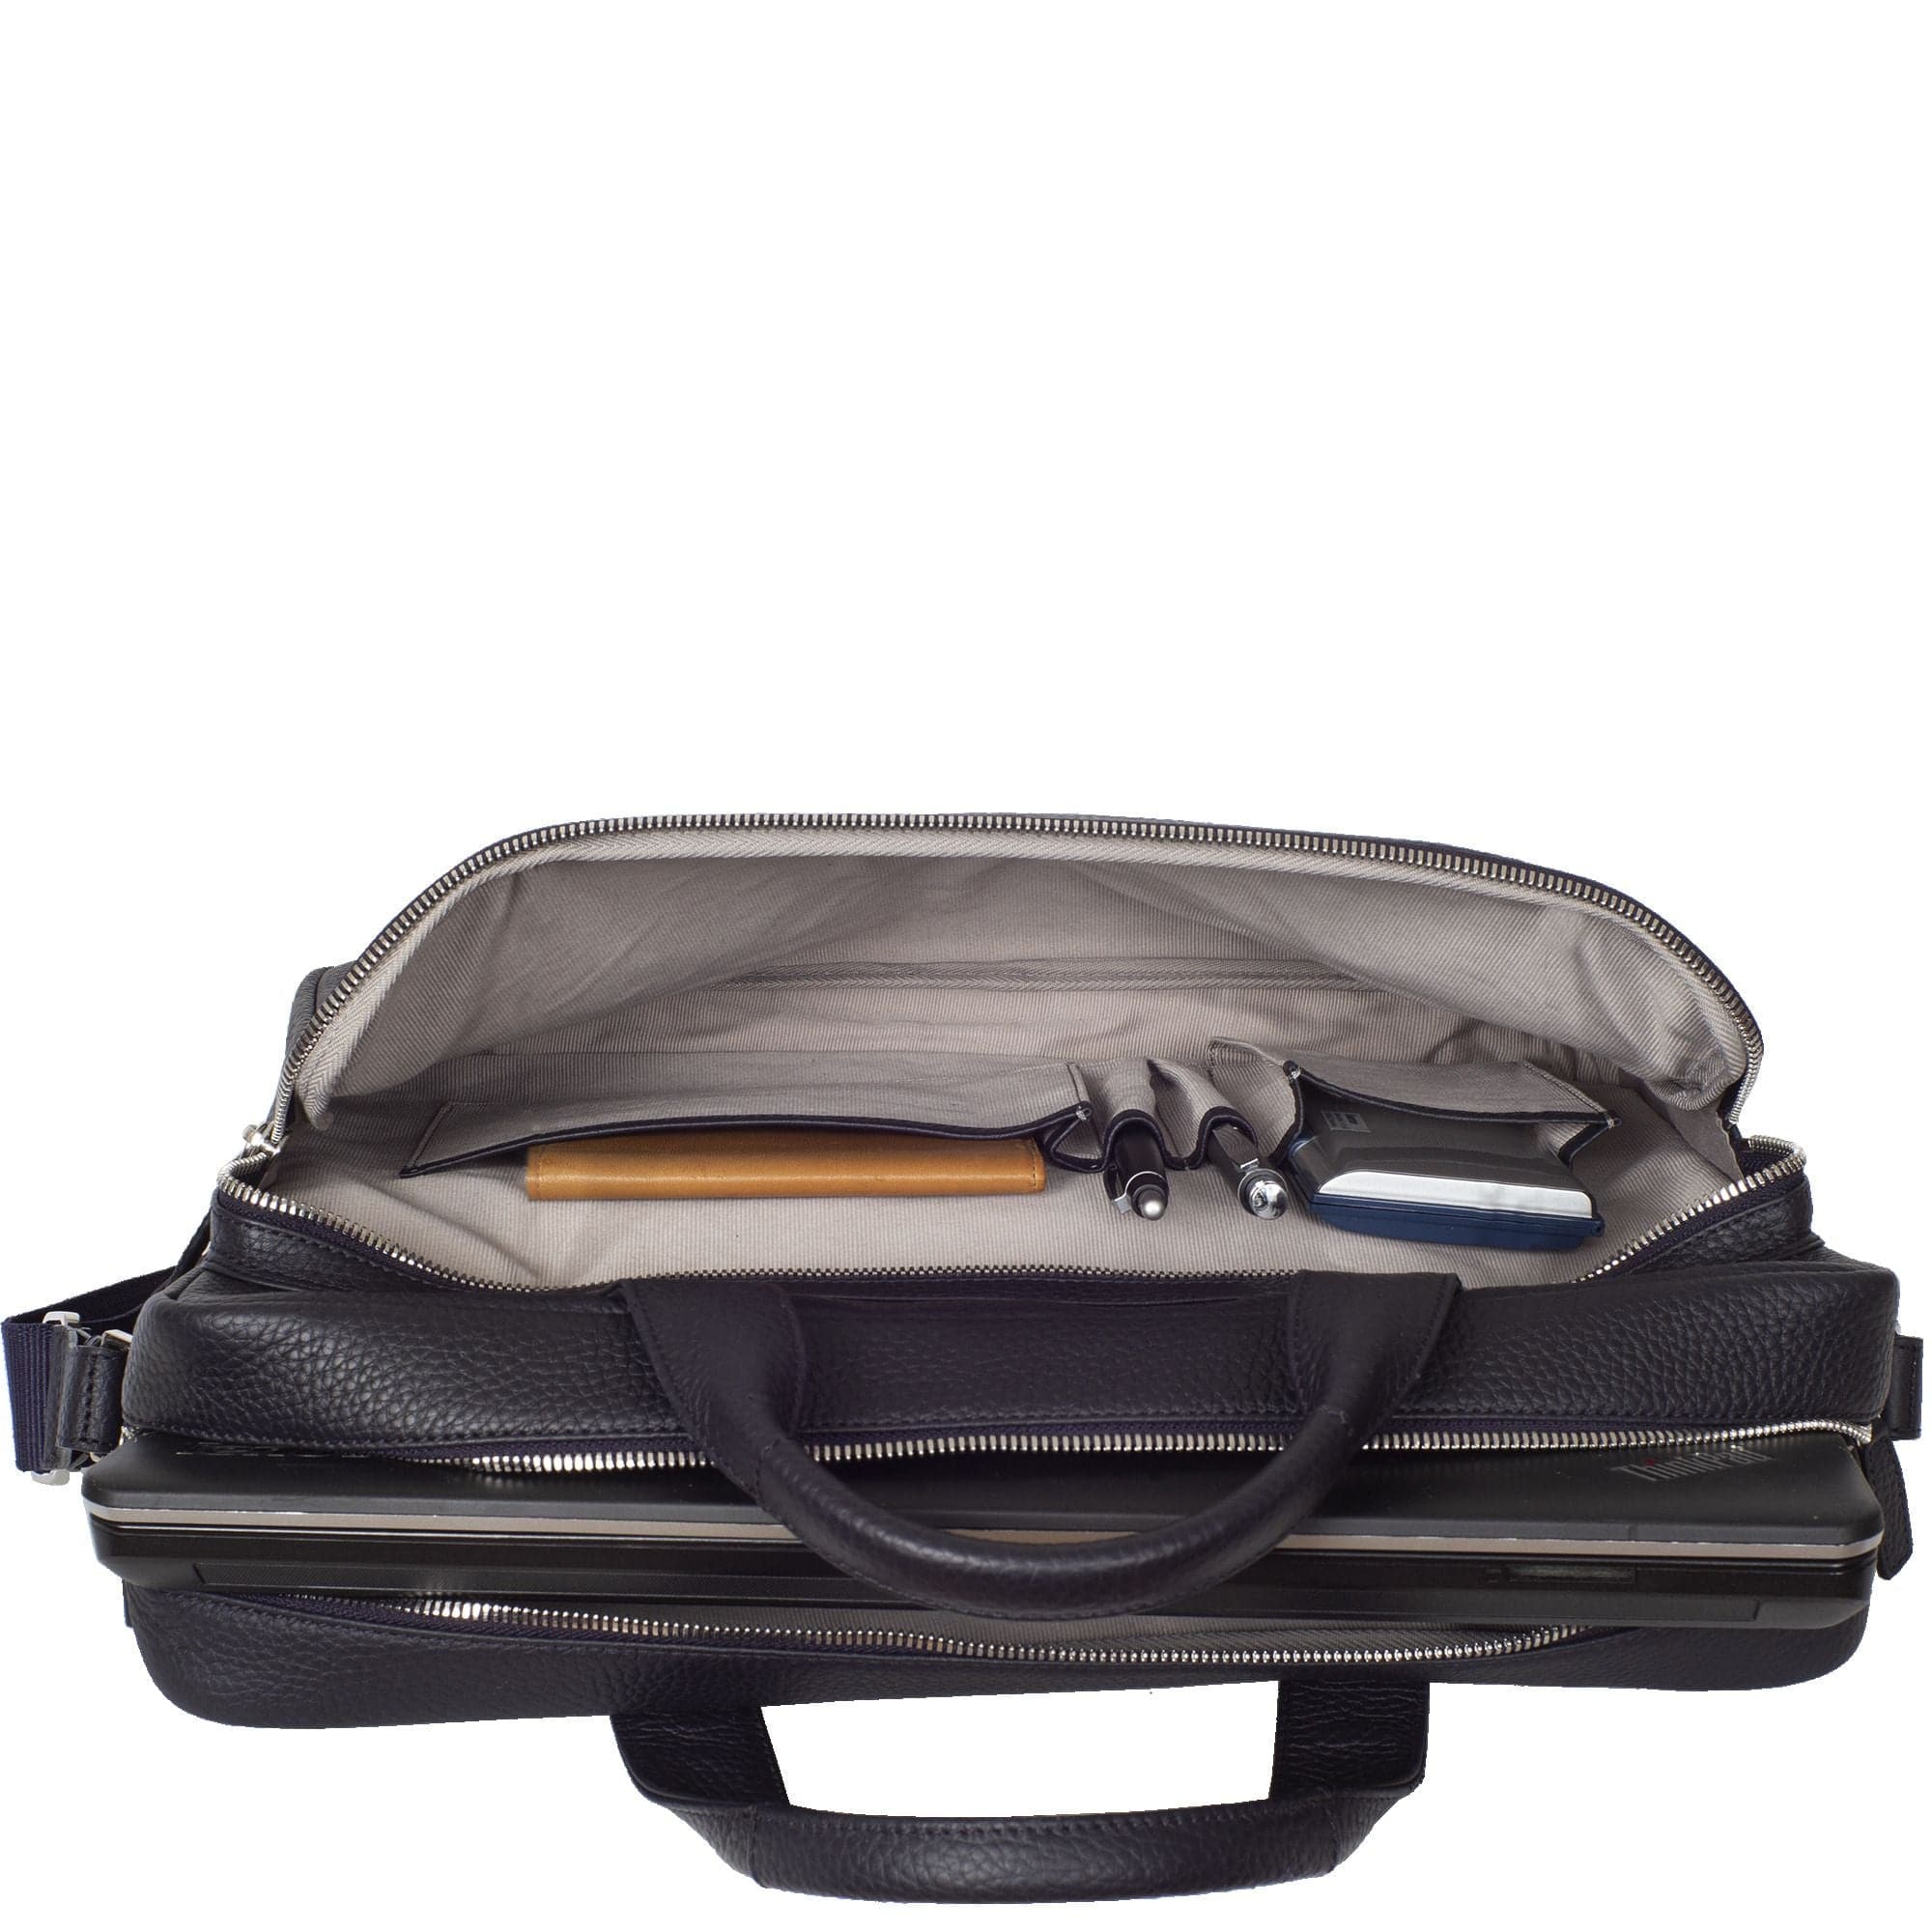 Businesstasche Laptoptasche 15 Zoll leicht genarbtes Leder schwarz